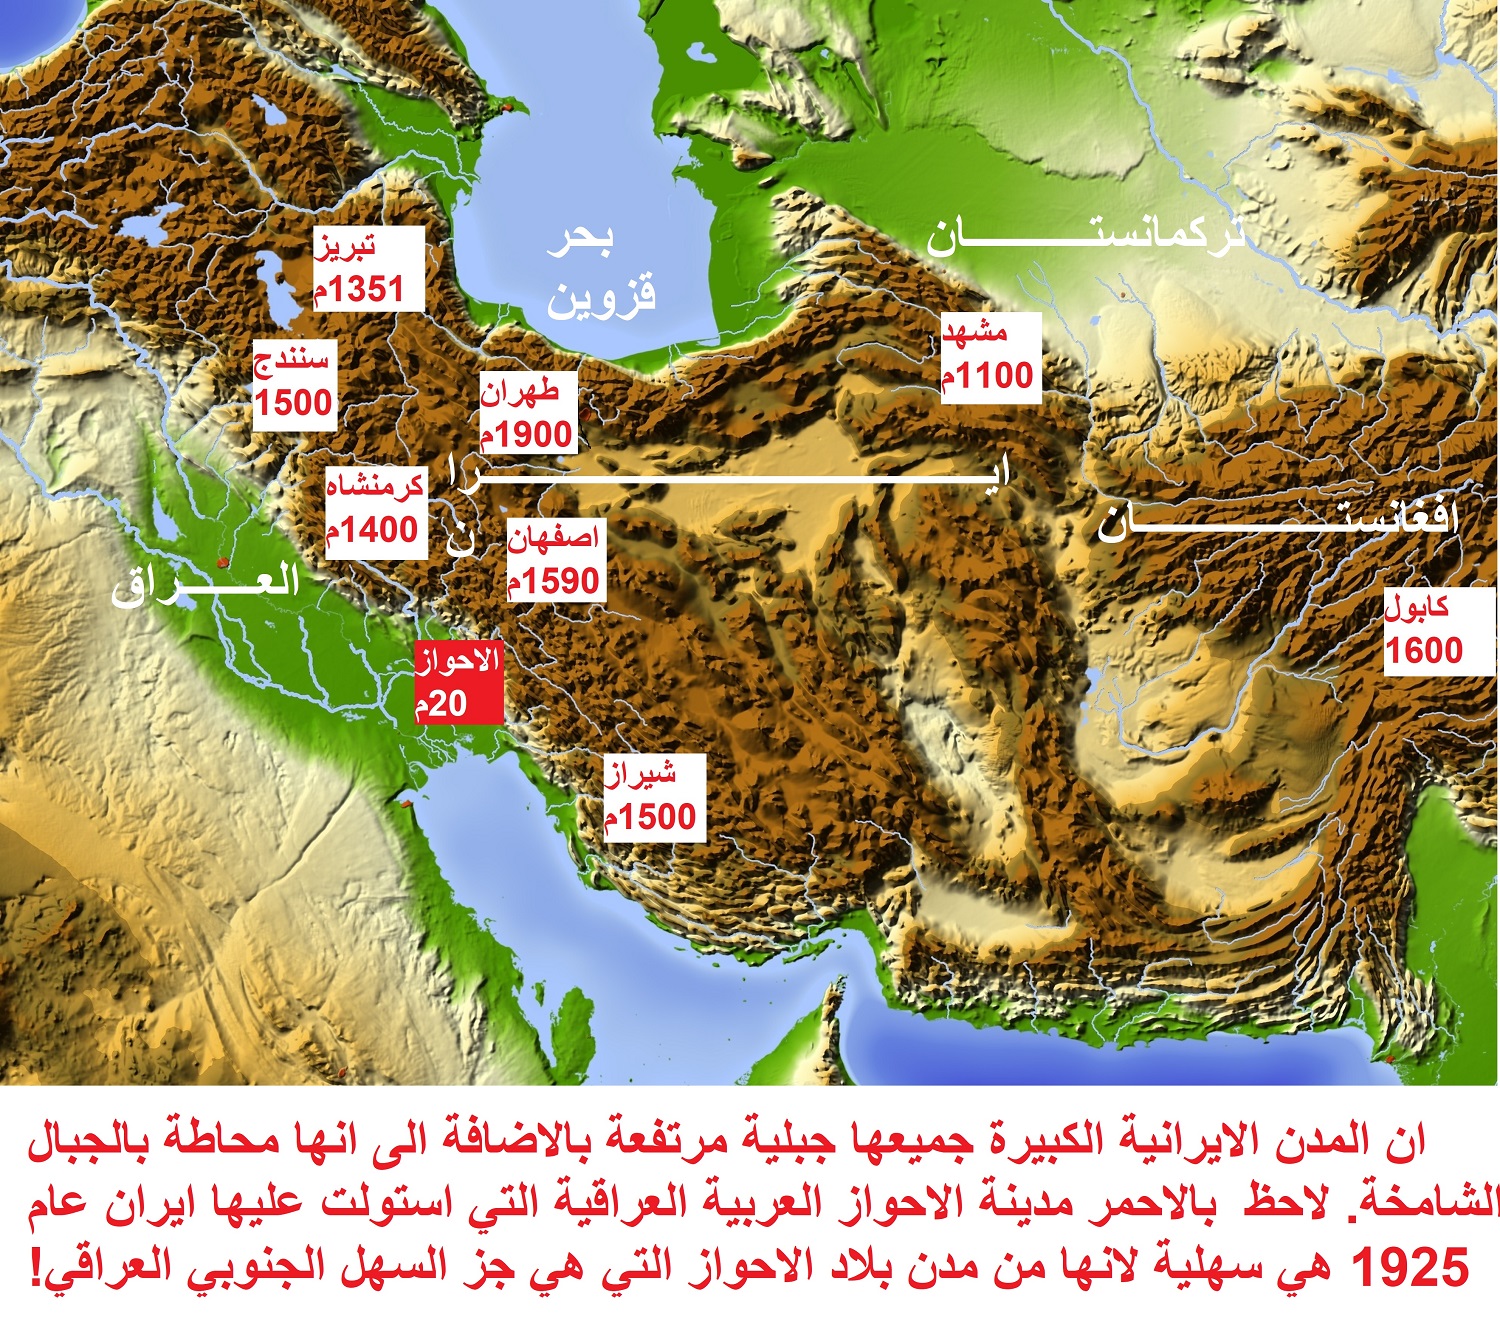 جميع الامبراطوريات الايرانية بدأت ثم انتهت في العراق موقع سليم مطر